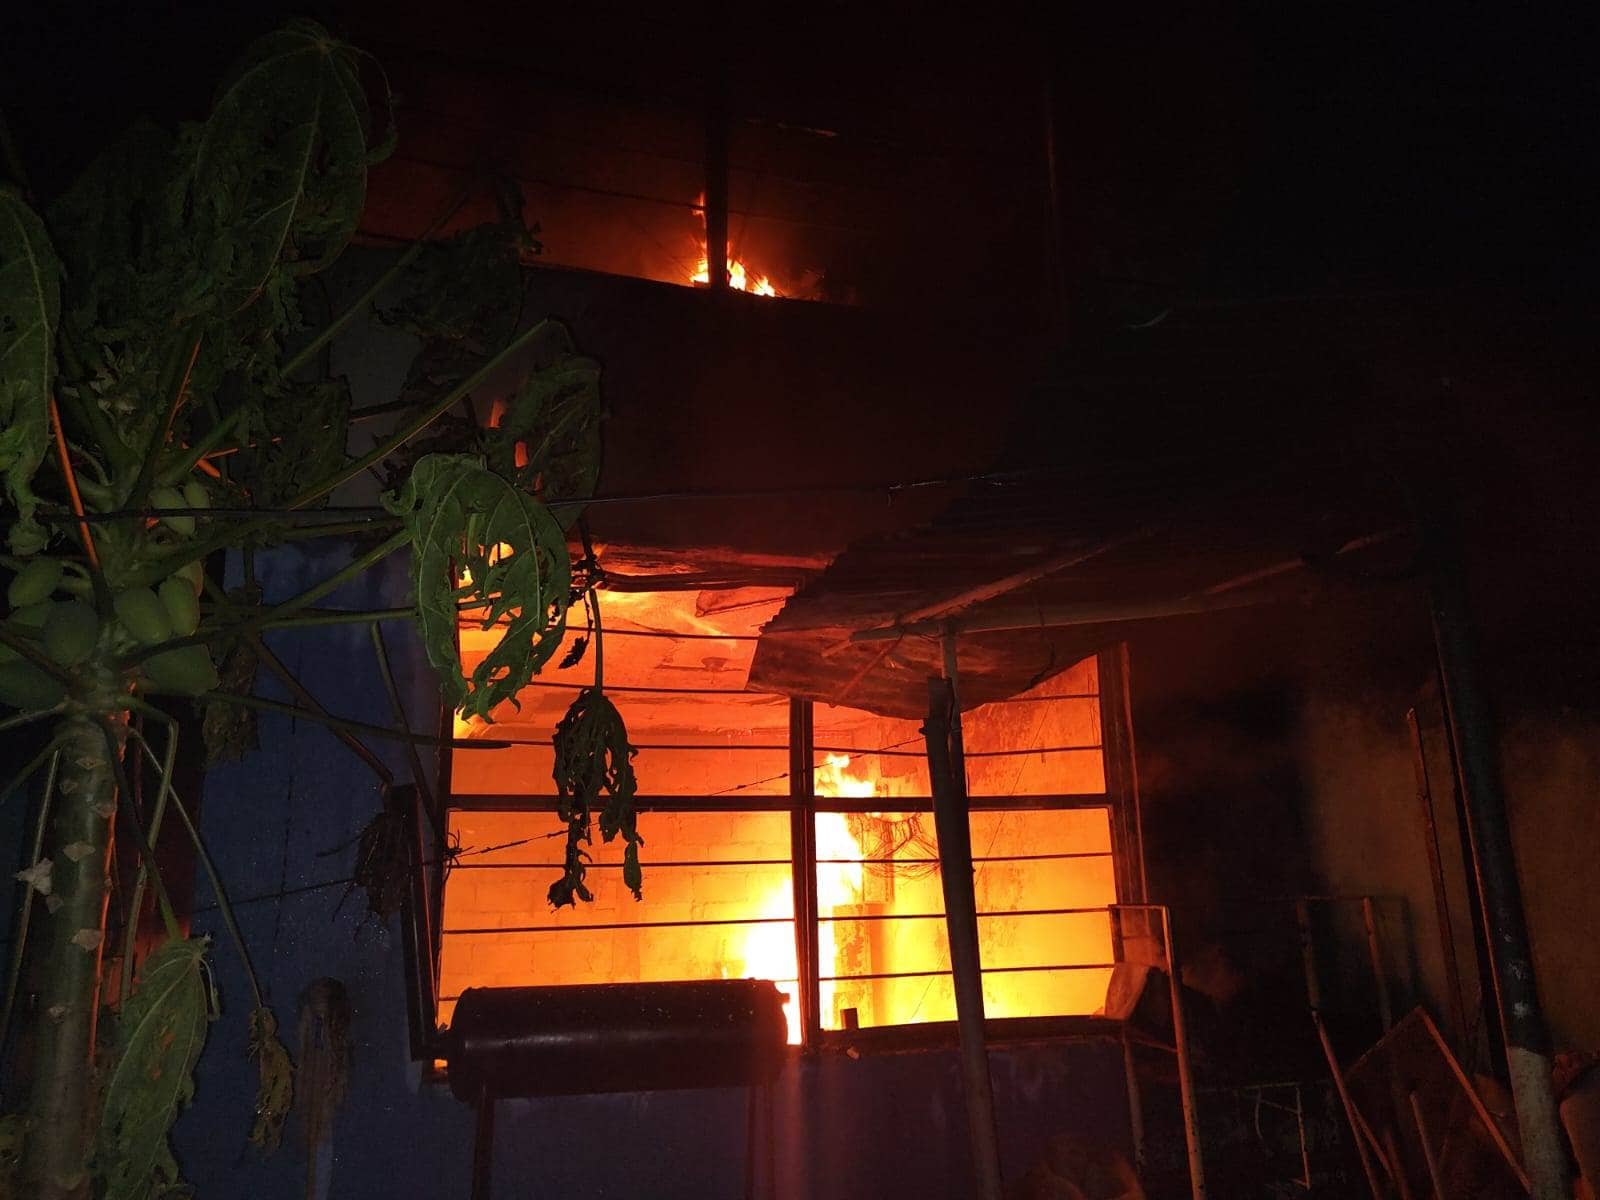 El incendio de un domicilio, movilizó a elementos de Bomberos de Nuevo León y efectivos de Protección Civil, en la Colonia Fabriles, municipio de Monterrey, sin que se reportaran lesionados.